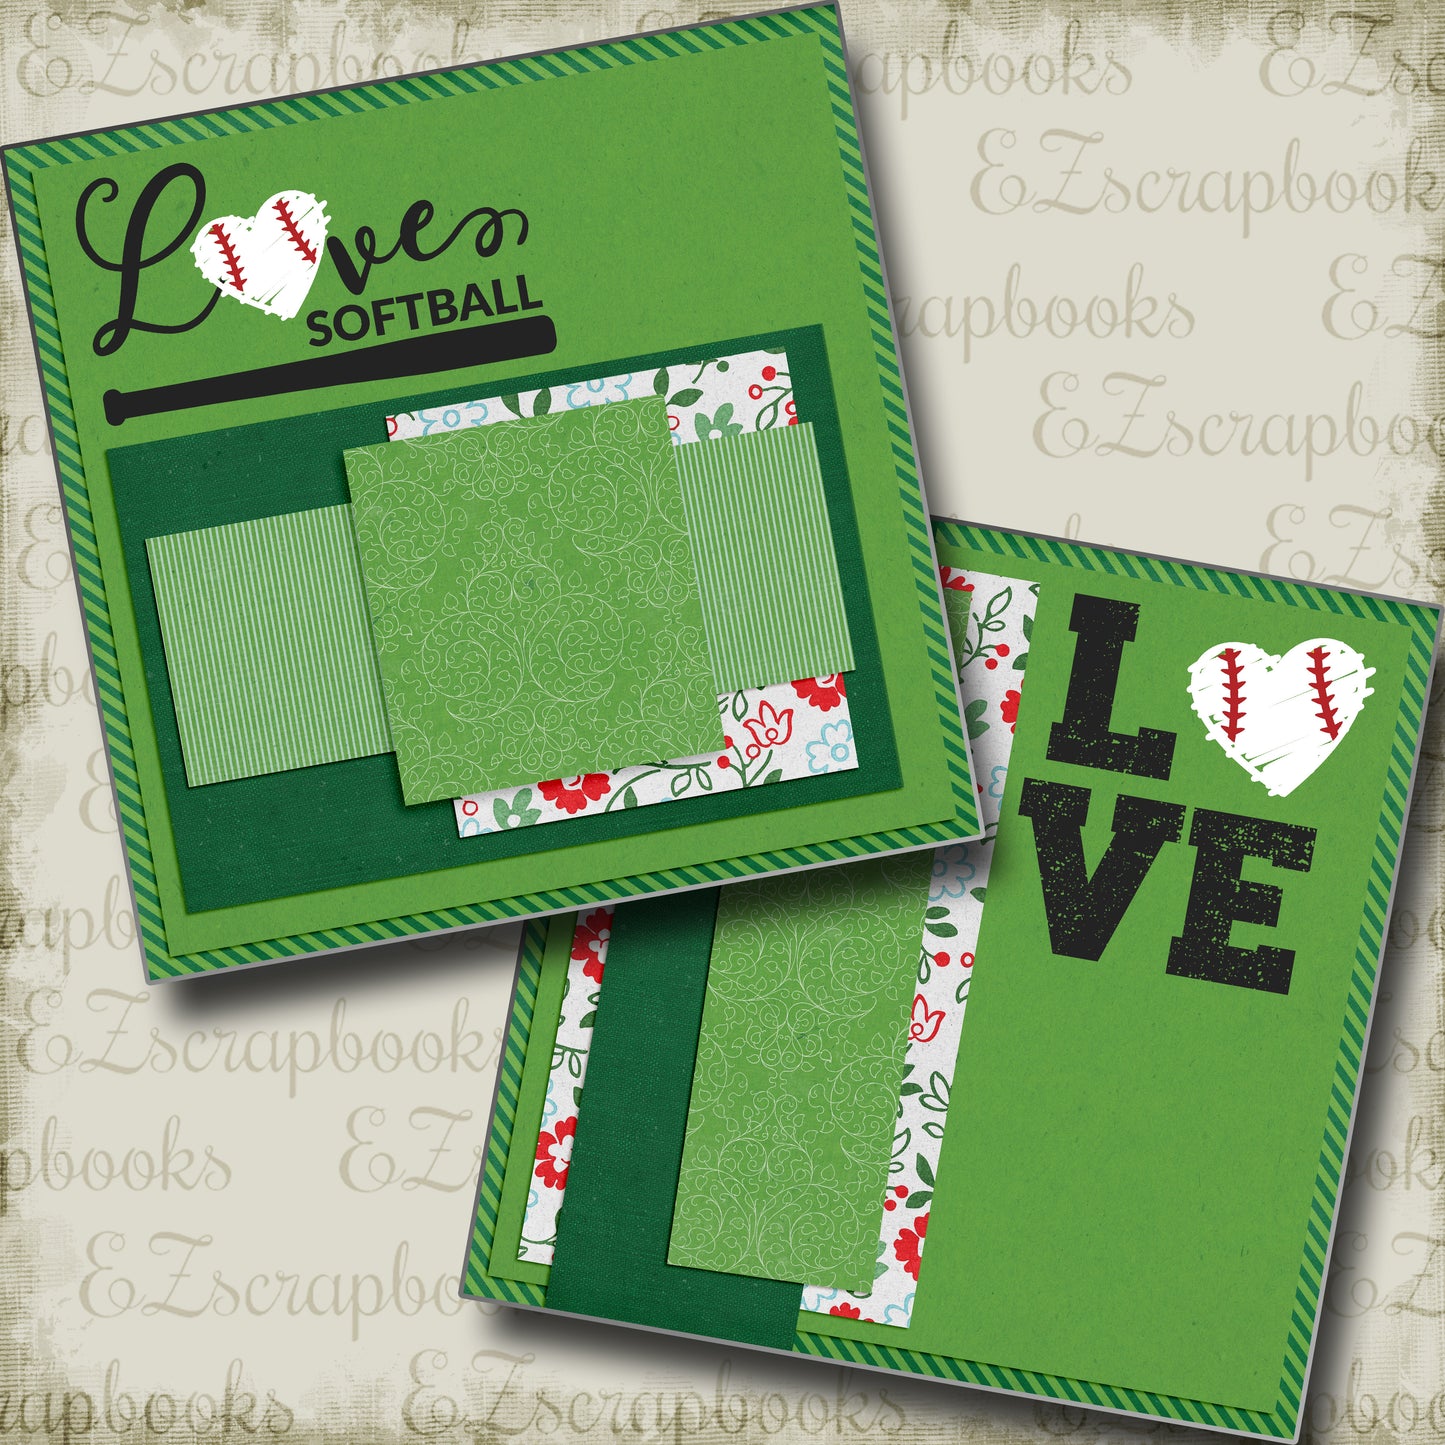 Love Softball NPM - 4965 - EZscrapbooks Scrapbook Layouts softball, Sports